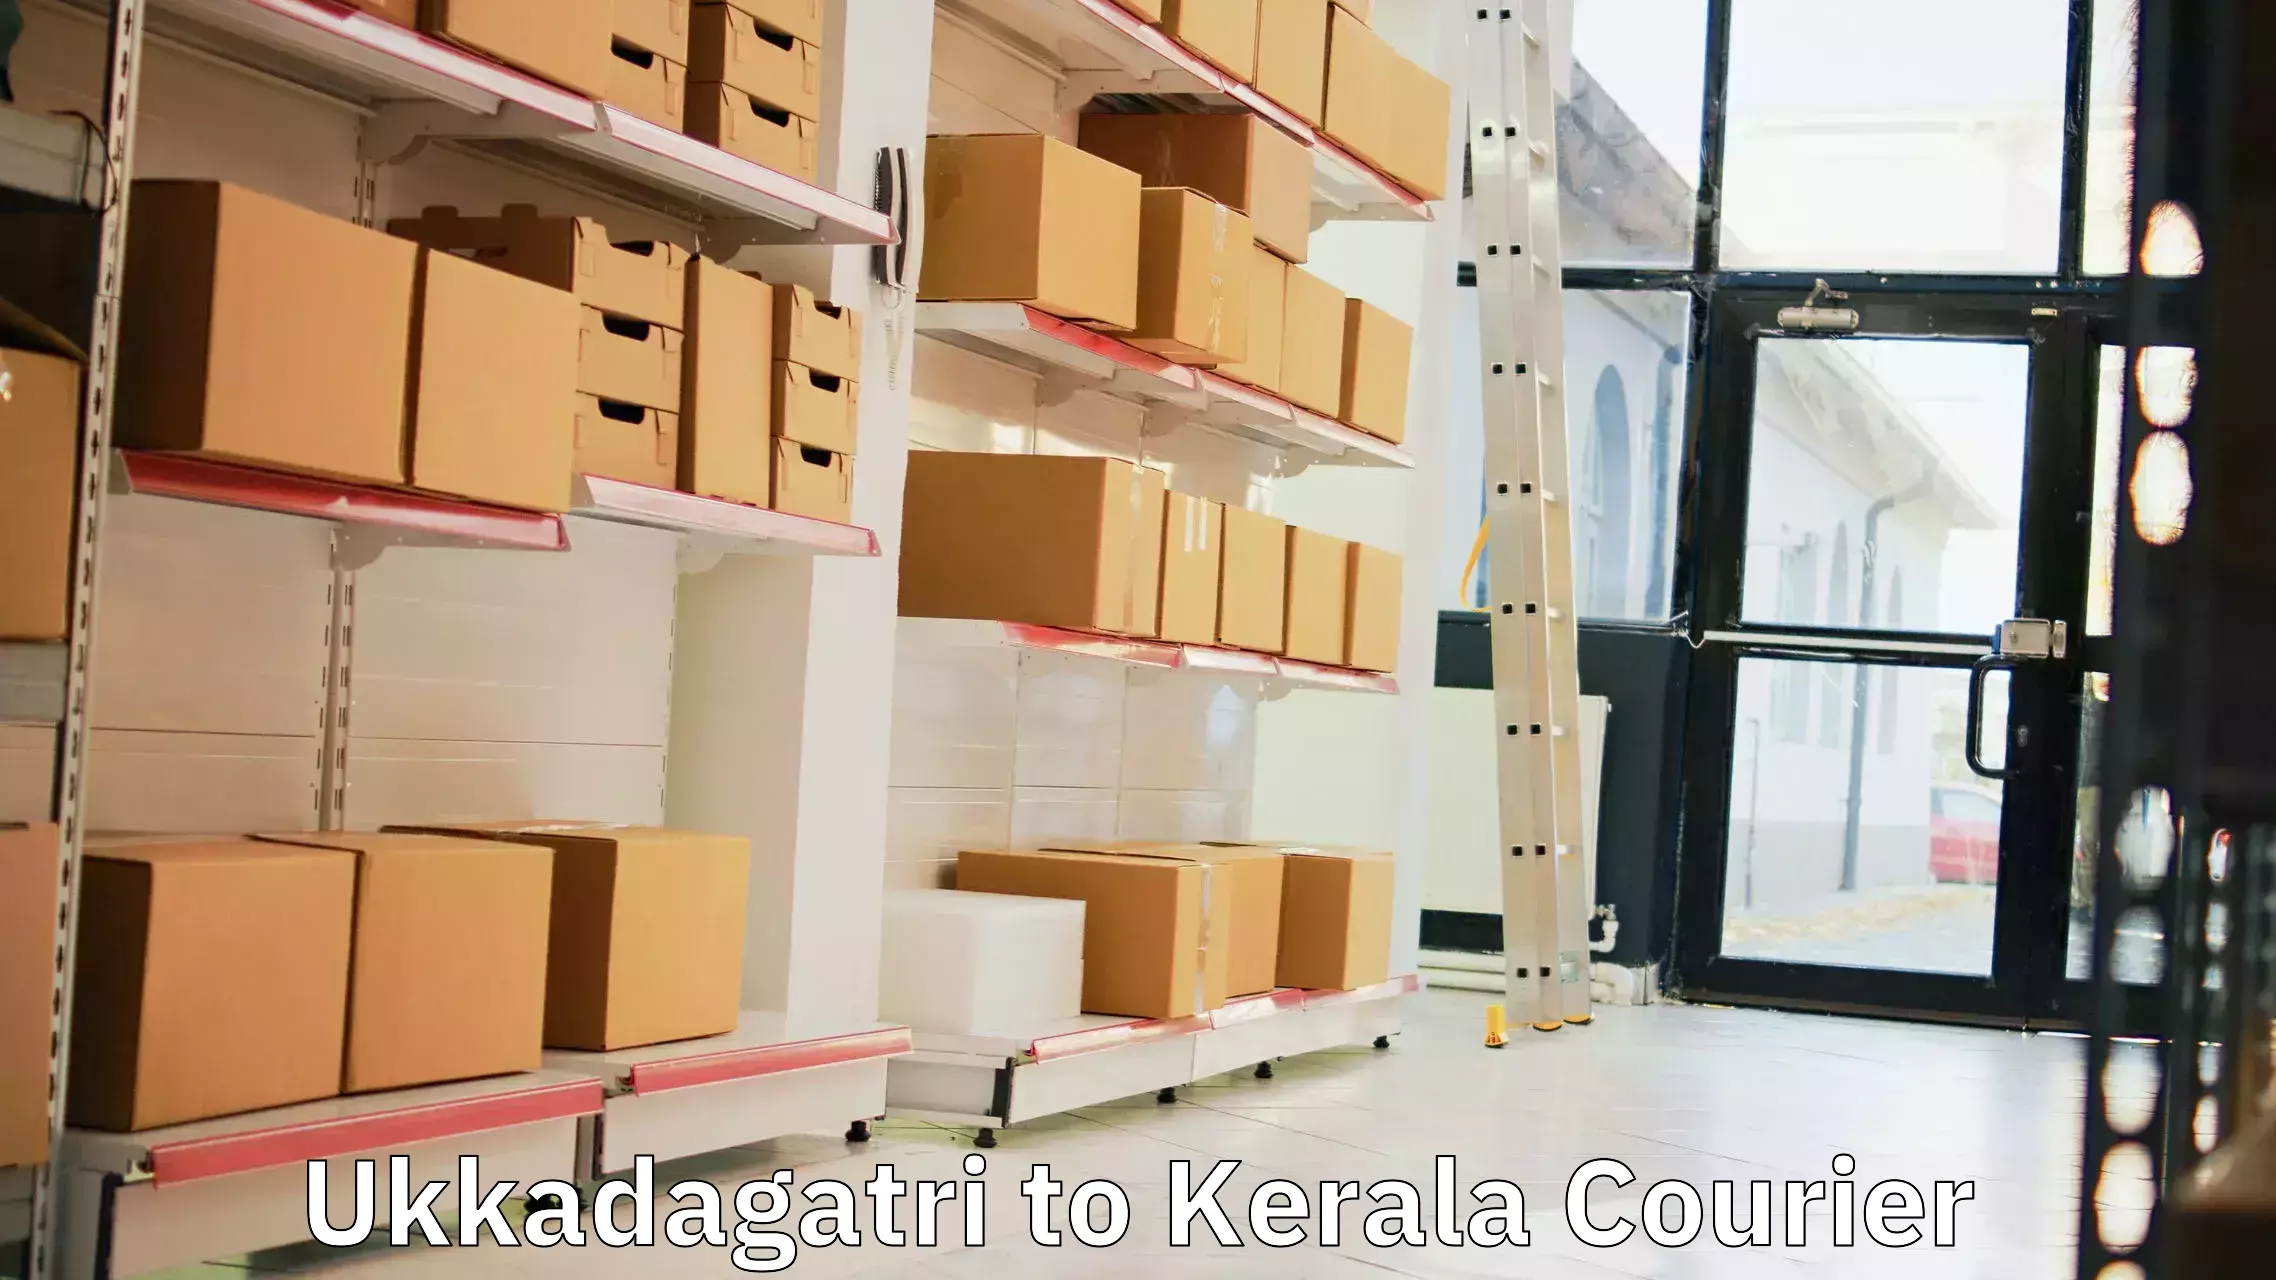 Bulk shipping discounts Ukkadagatri to Kochi